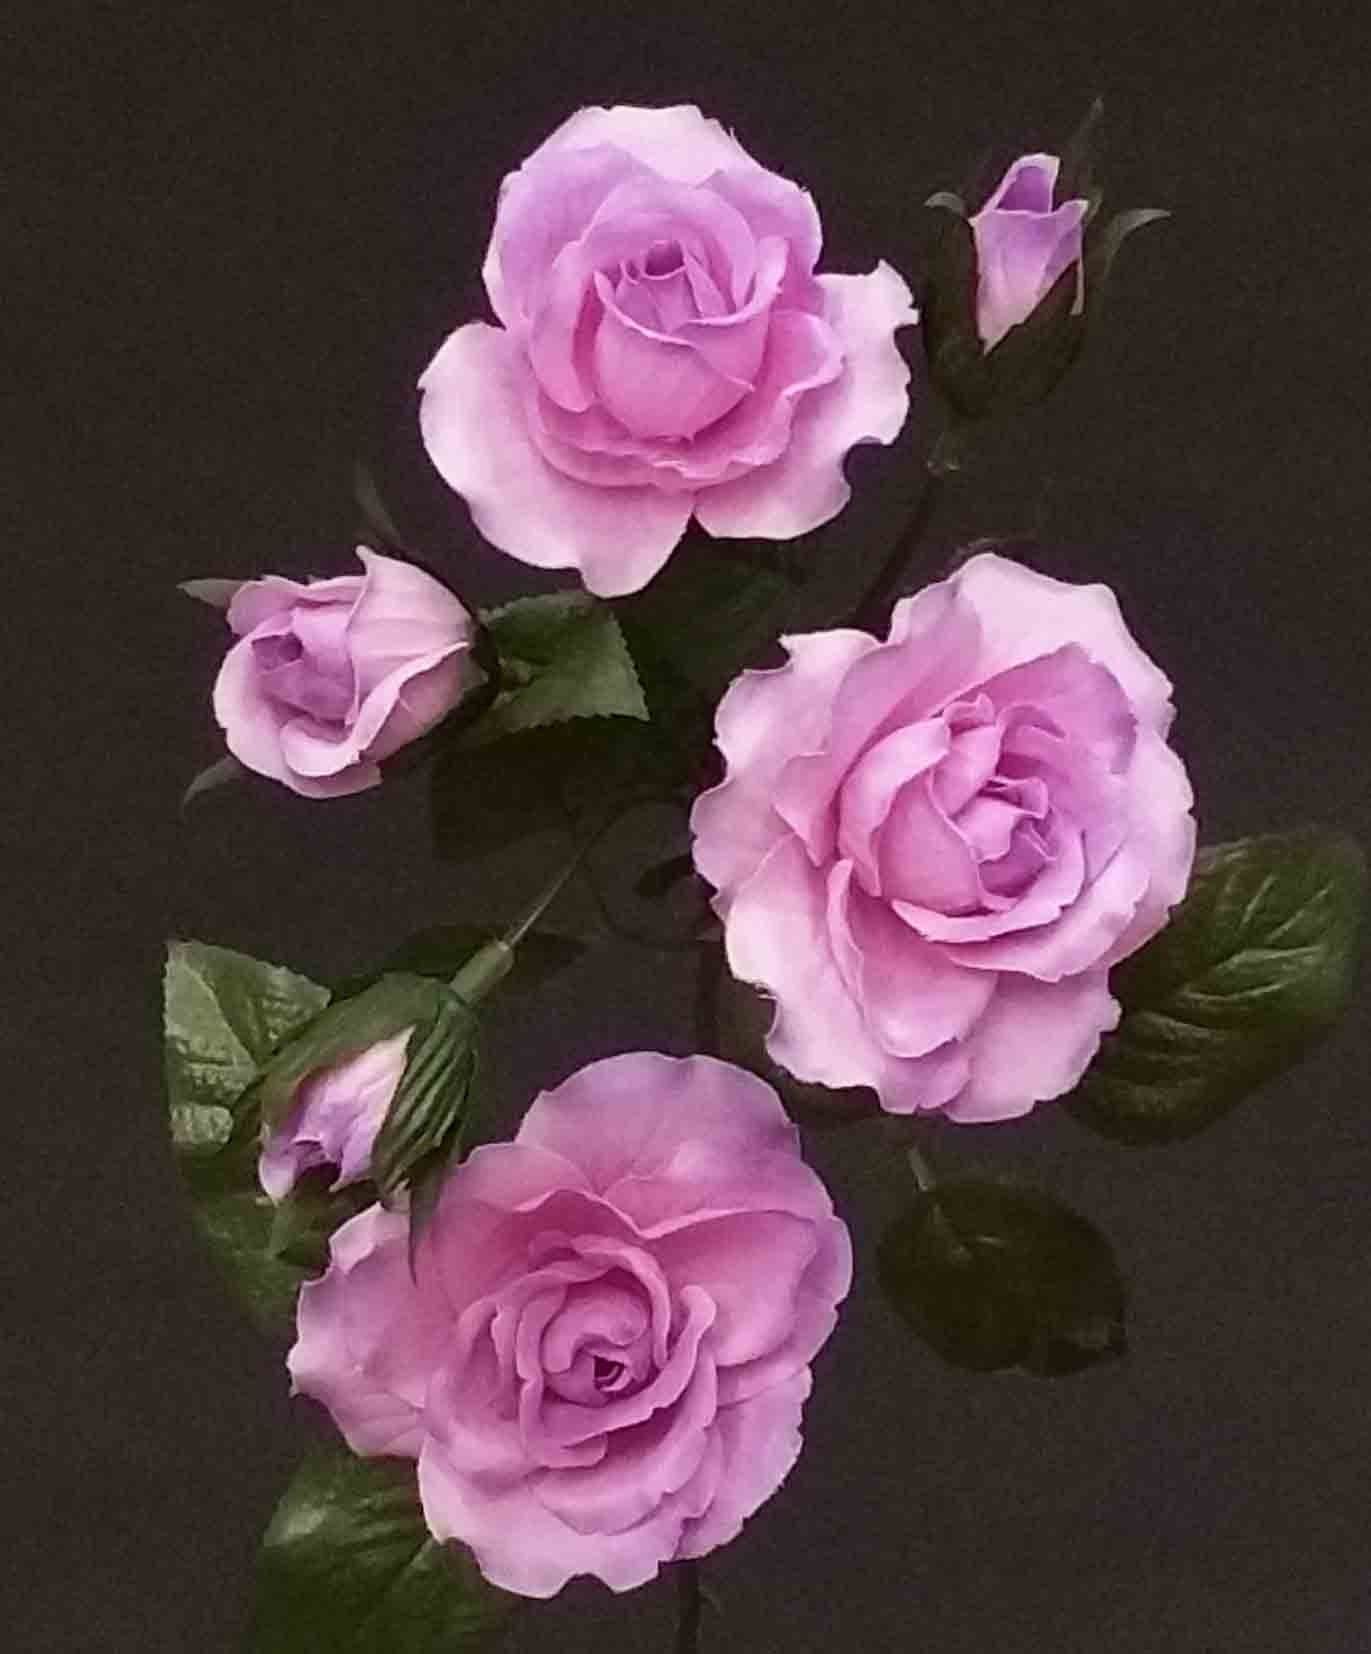 R5 - 24" Lavender Rose Spray - 3.85 ea, 3.55/12